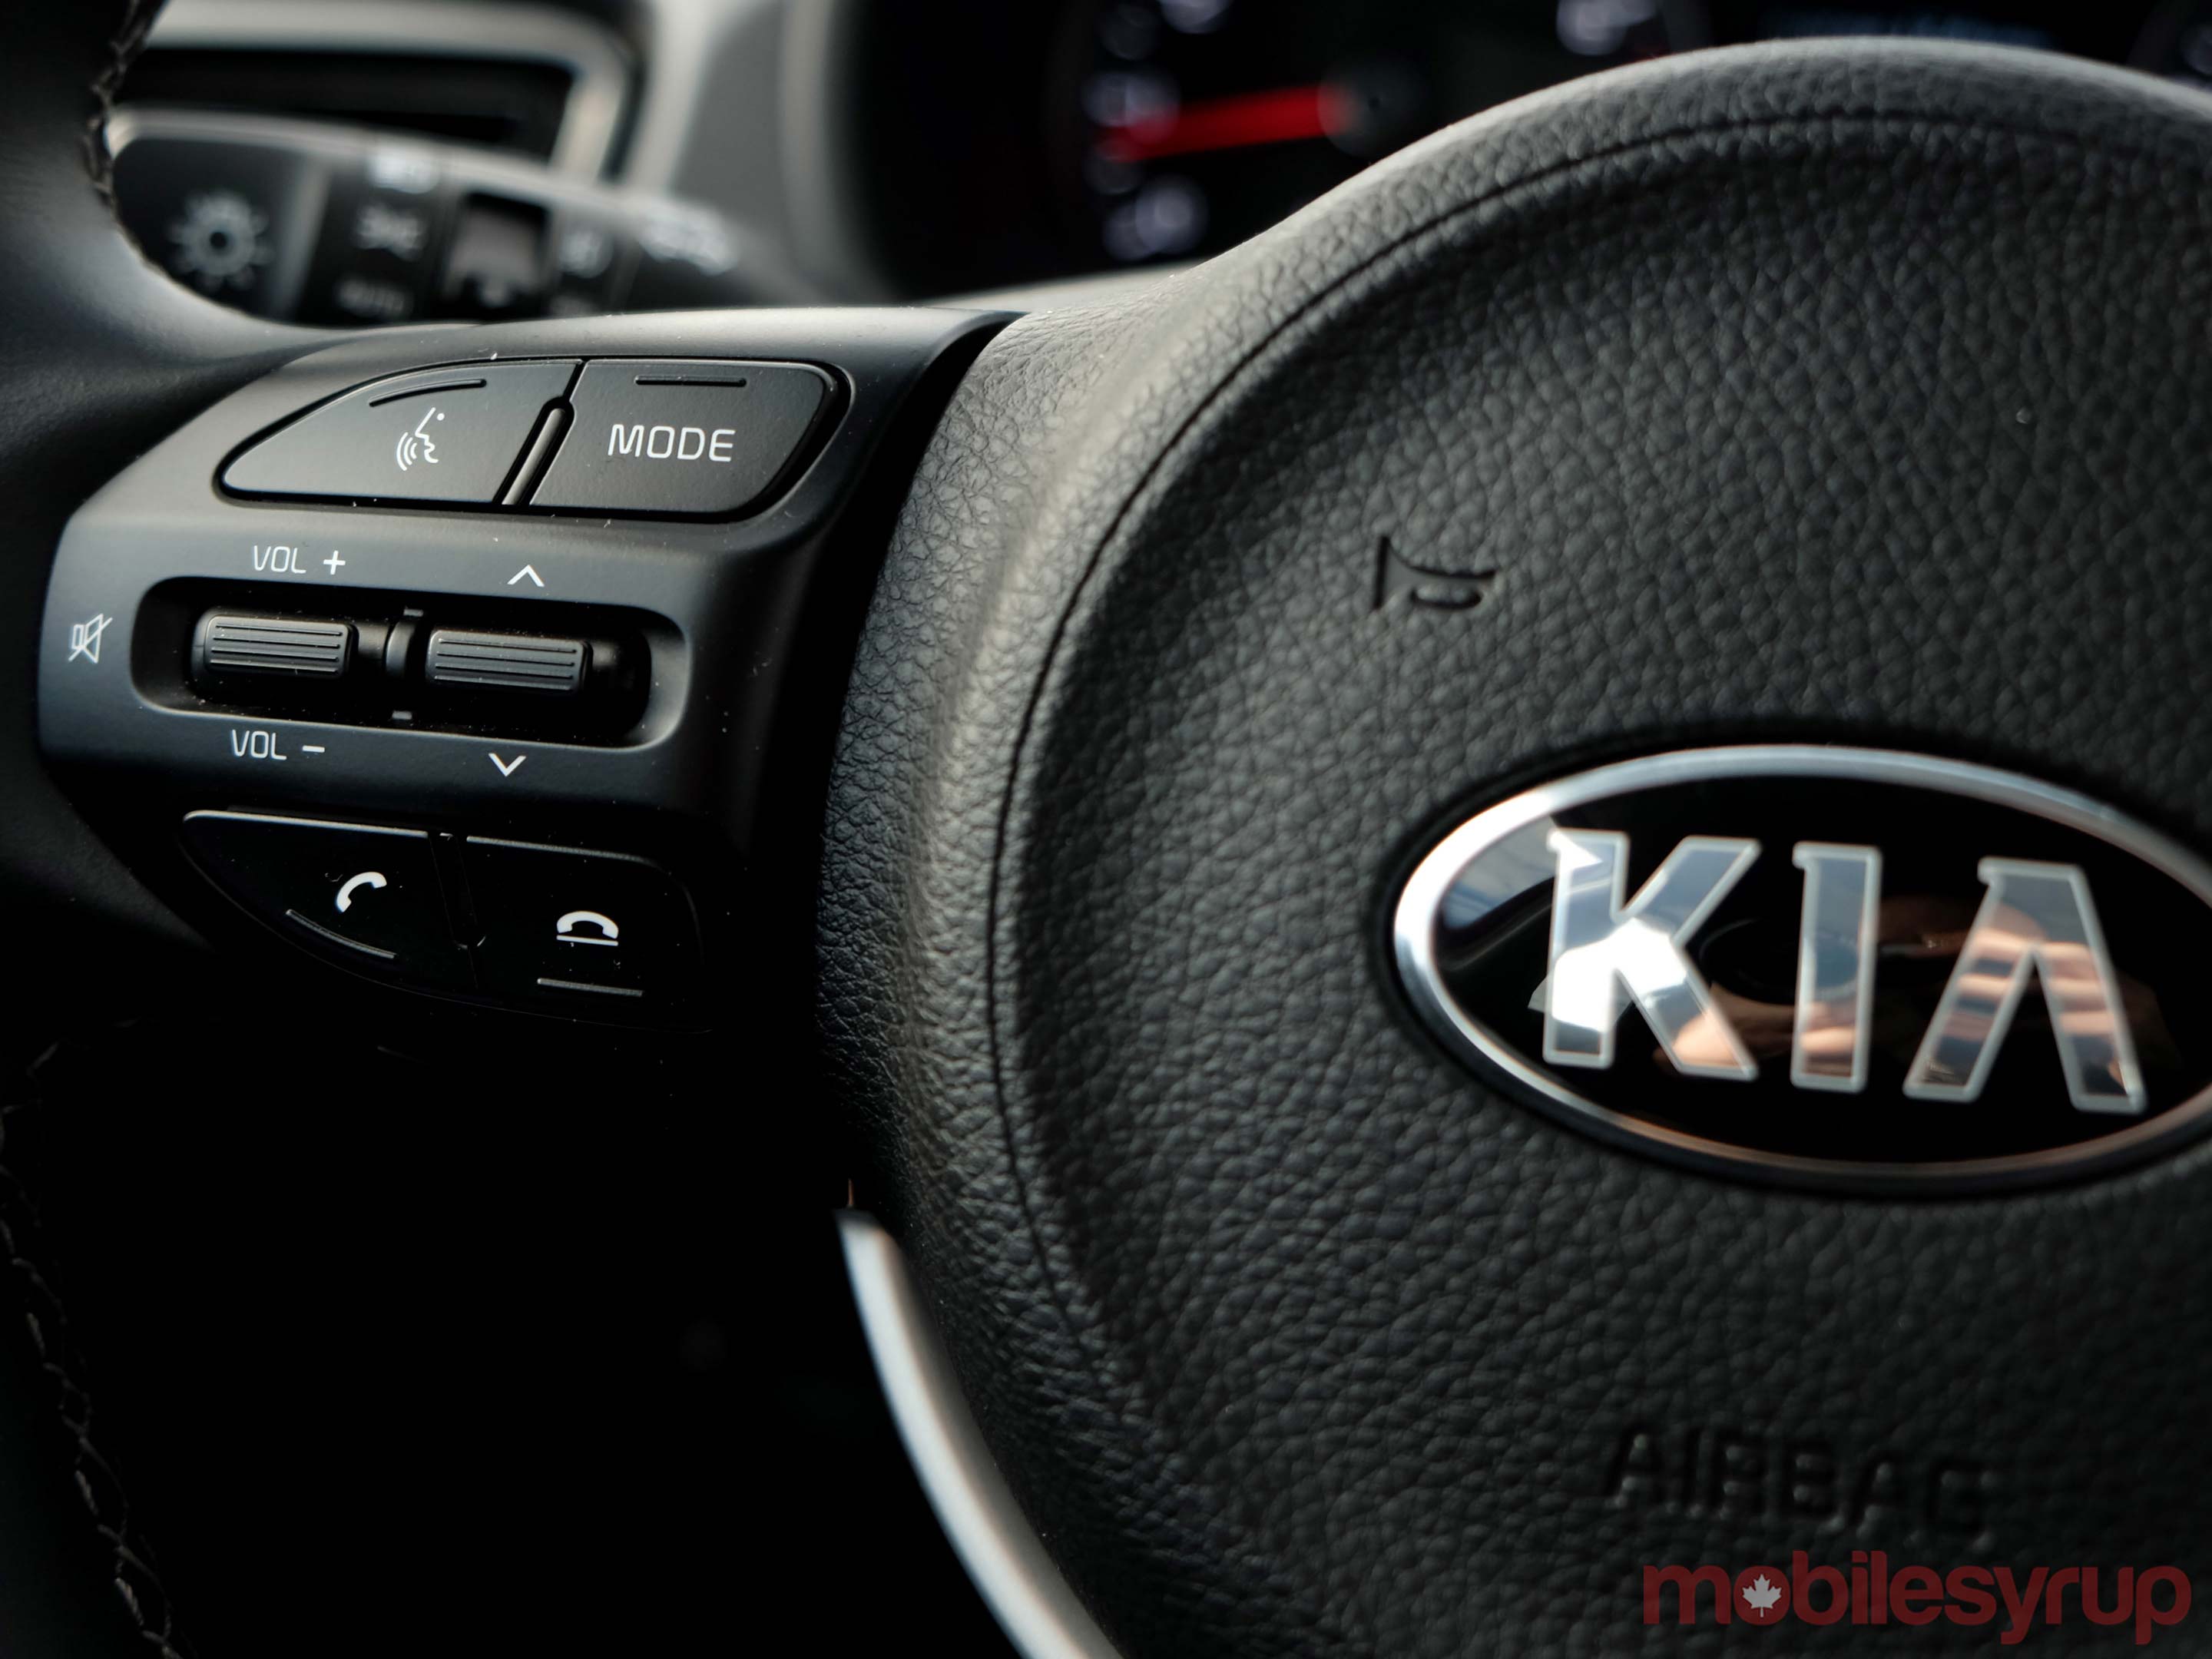 Kia-Rio steering wheel control